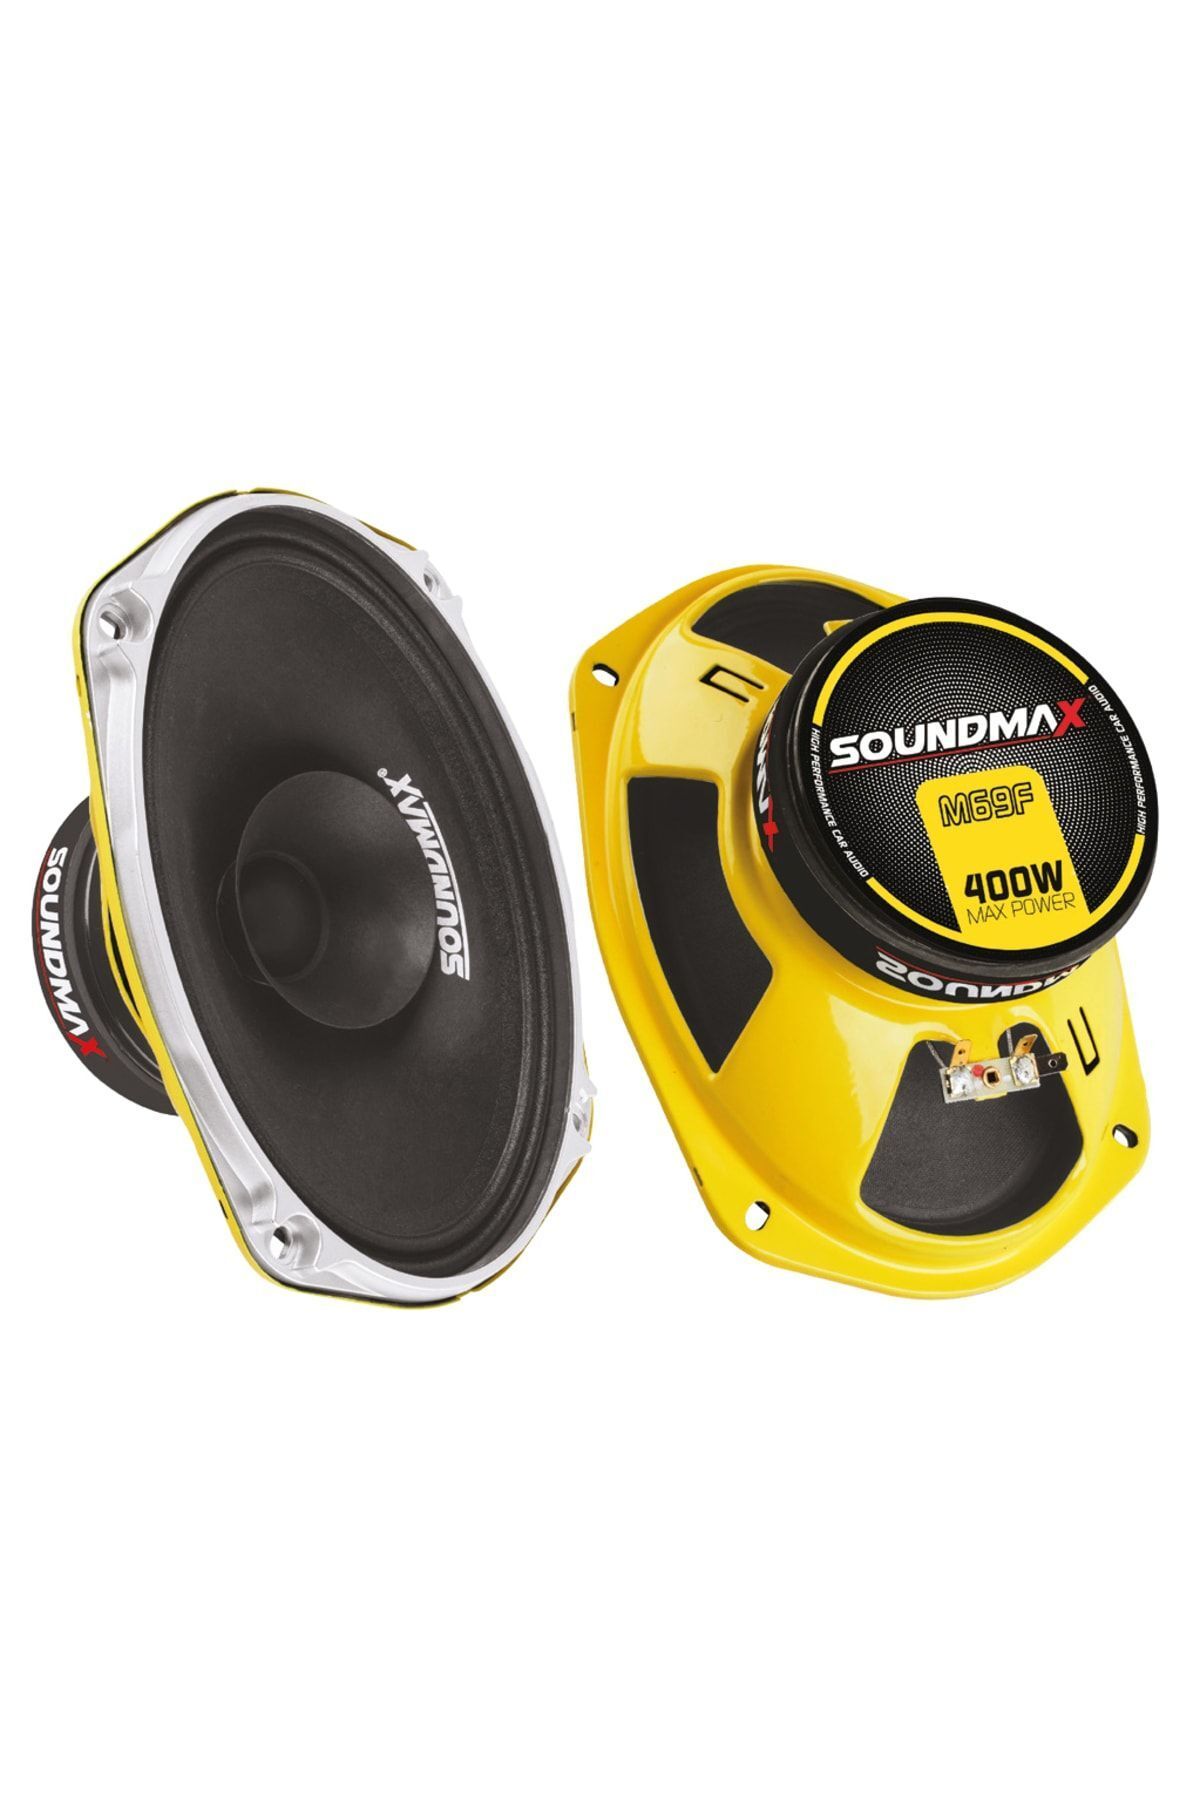 Soundmax Sx-m69f 400 Watt 6x9 Oval Midrange Çift Fiyatıdır